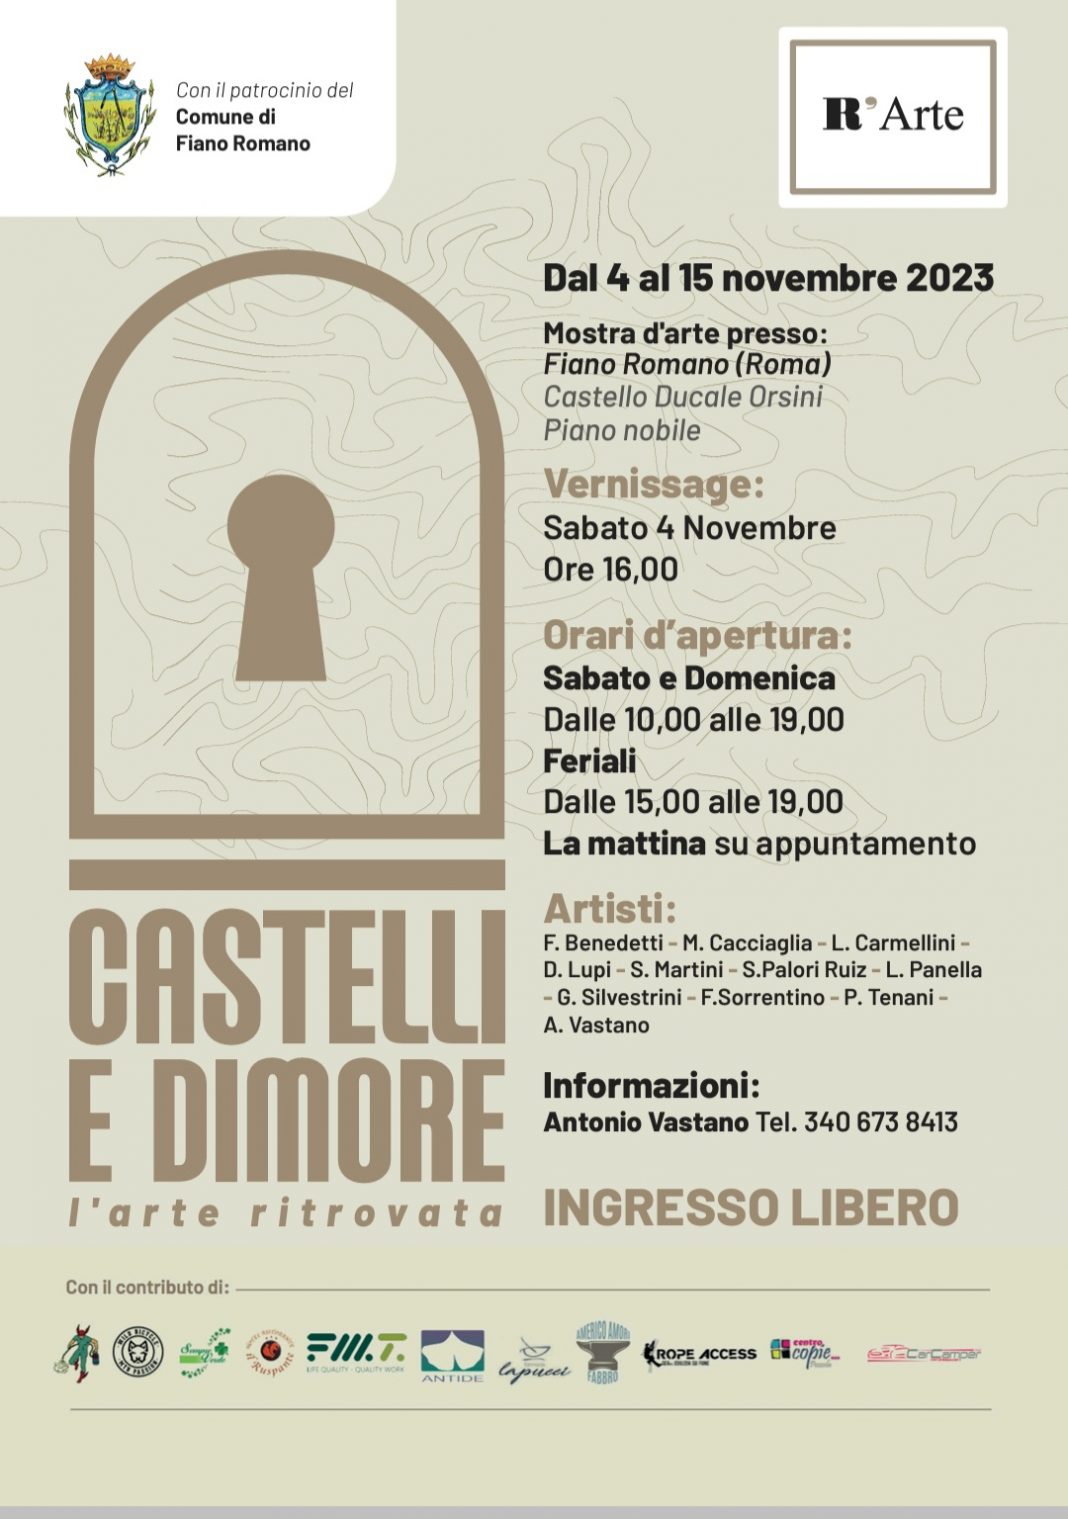 Castelli e Dimore…l’arte ritrovatahttps://www.exibart.com/repository/media/formidable/11/img/46e/Locandina-Castelli-e-Dimore--1068x1519.jpg